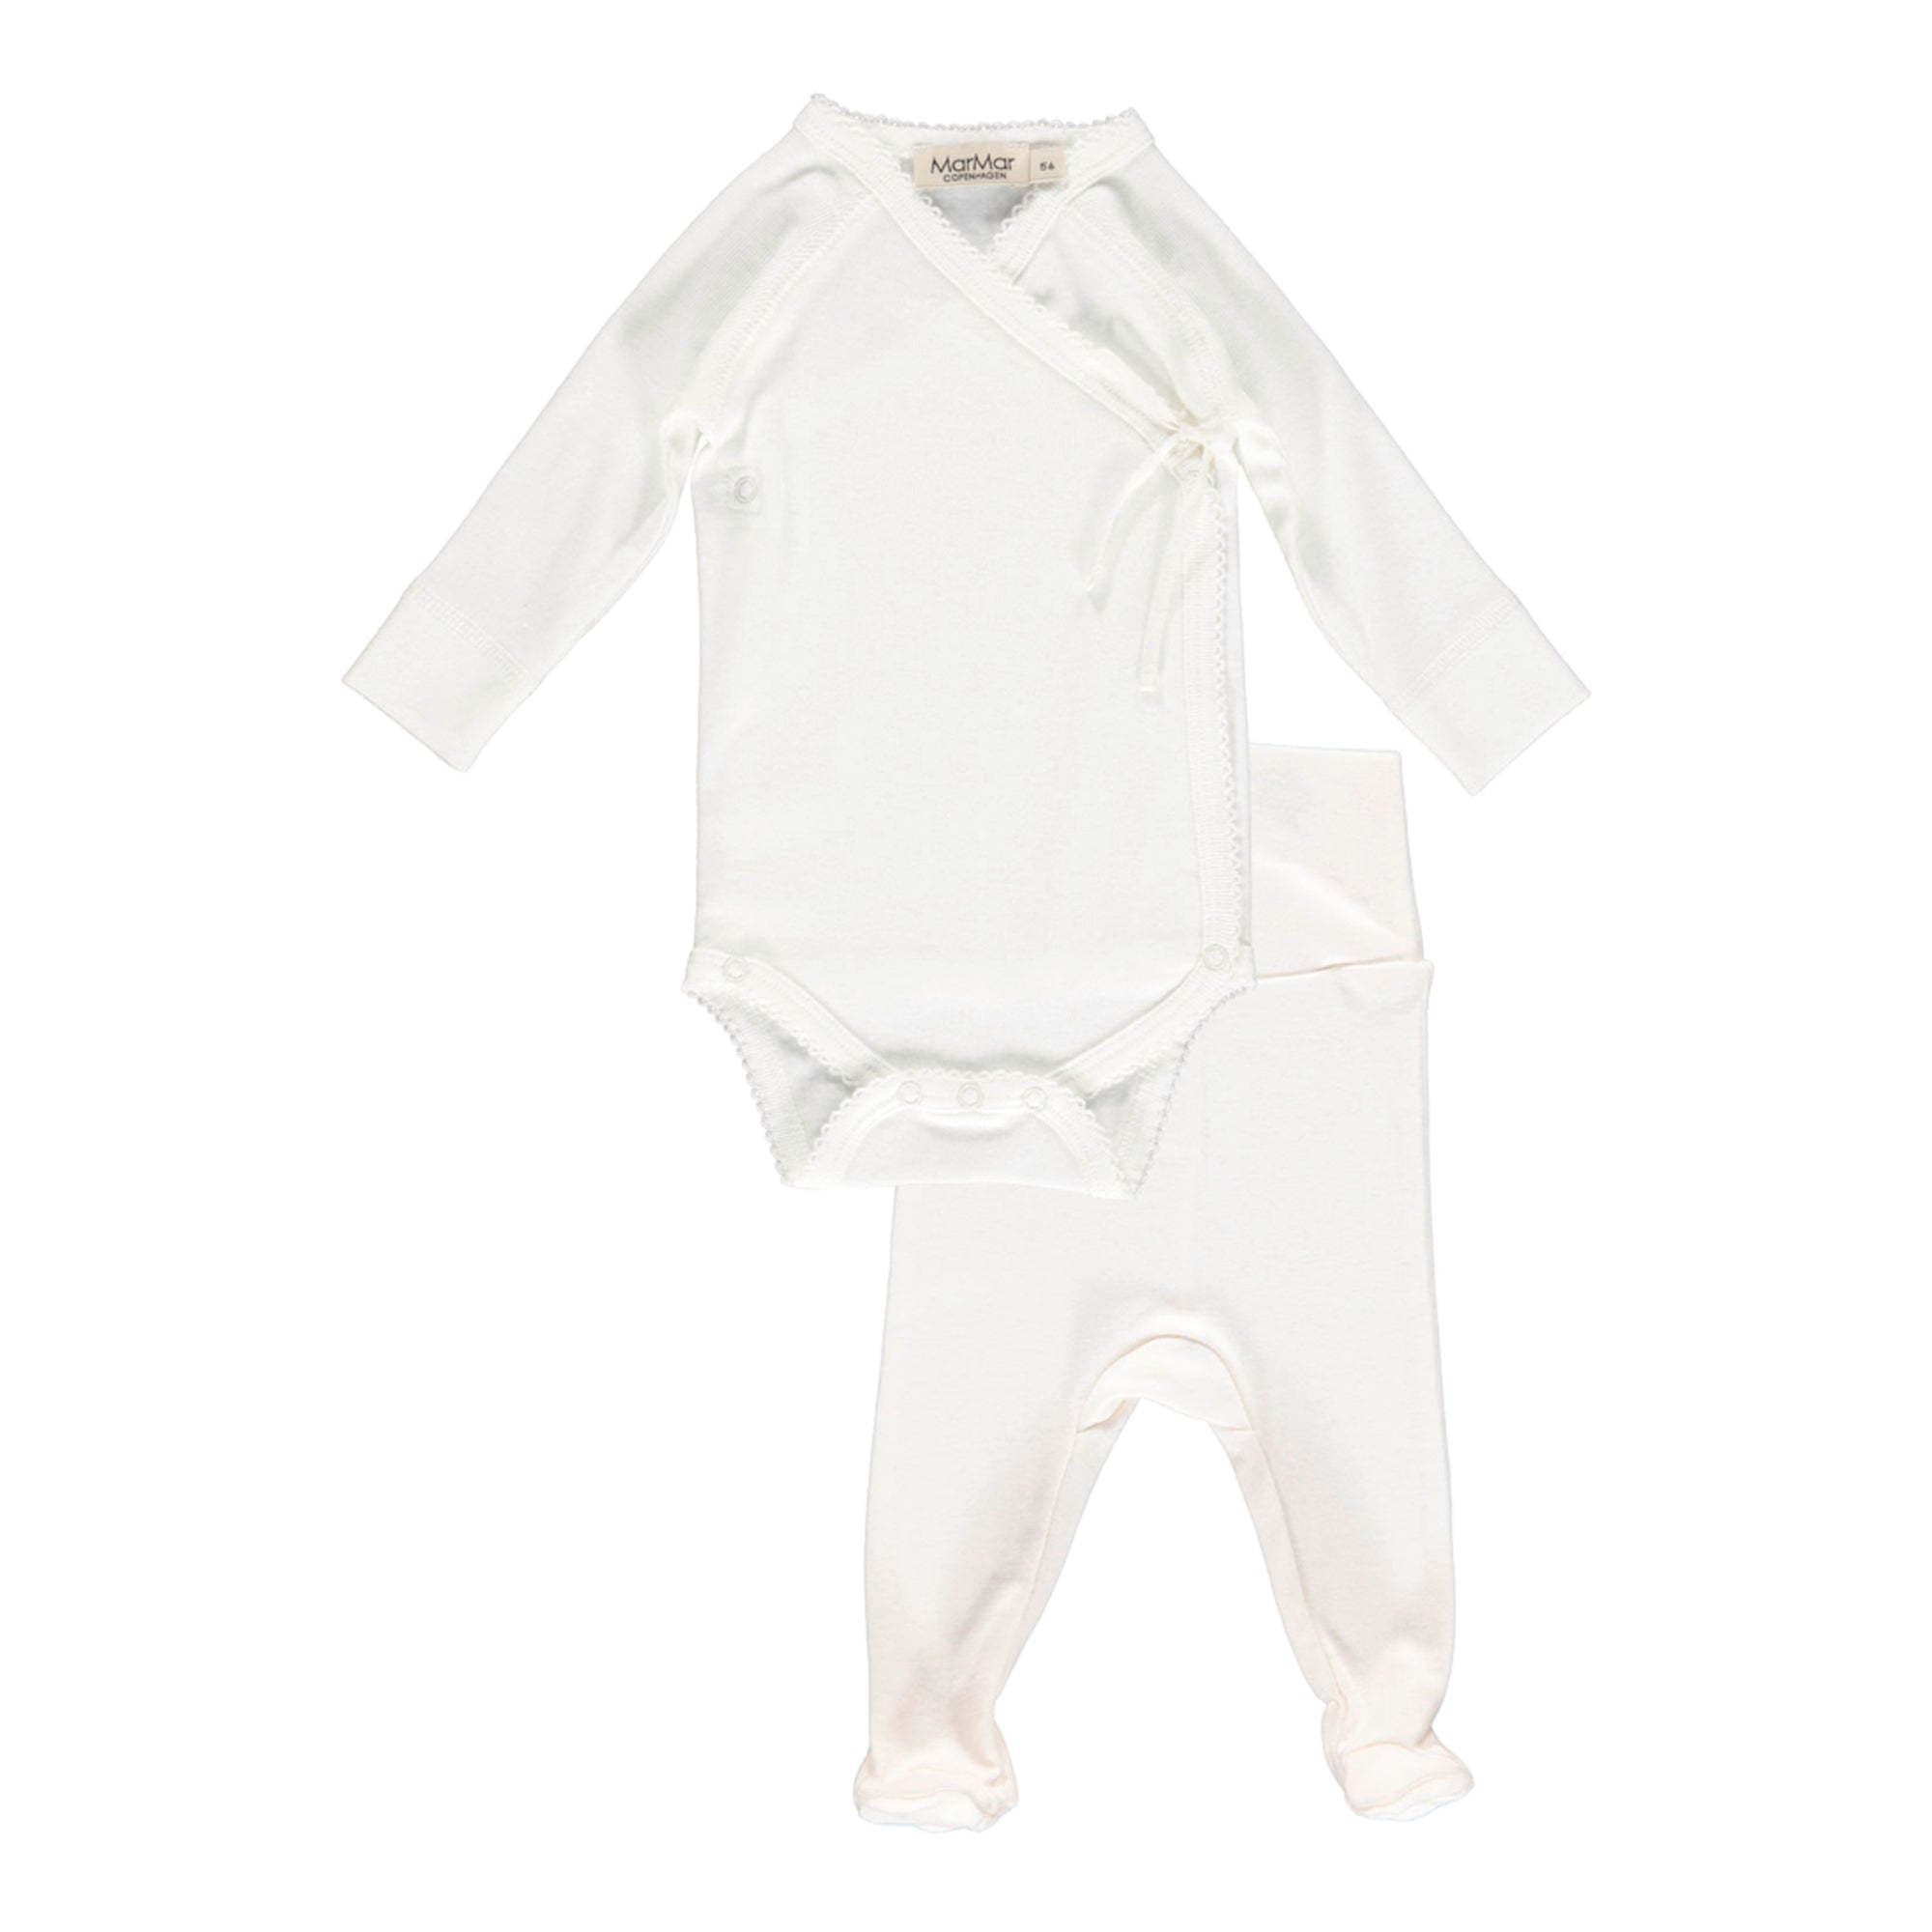 Baby Boys & Girls White Babysuit Set